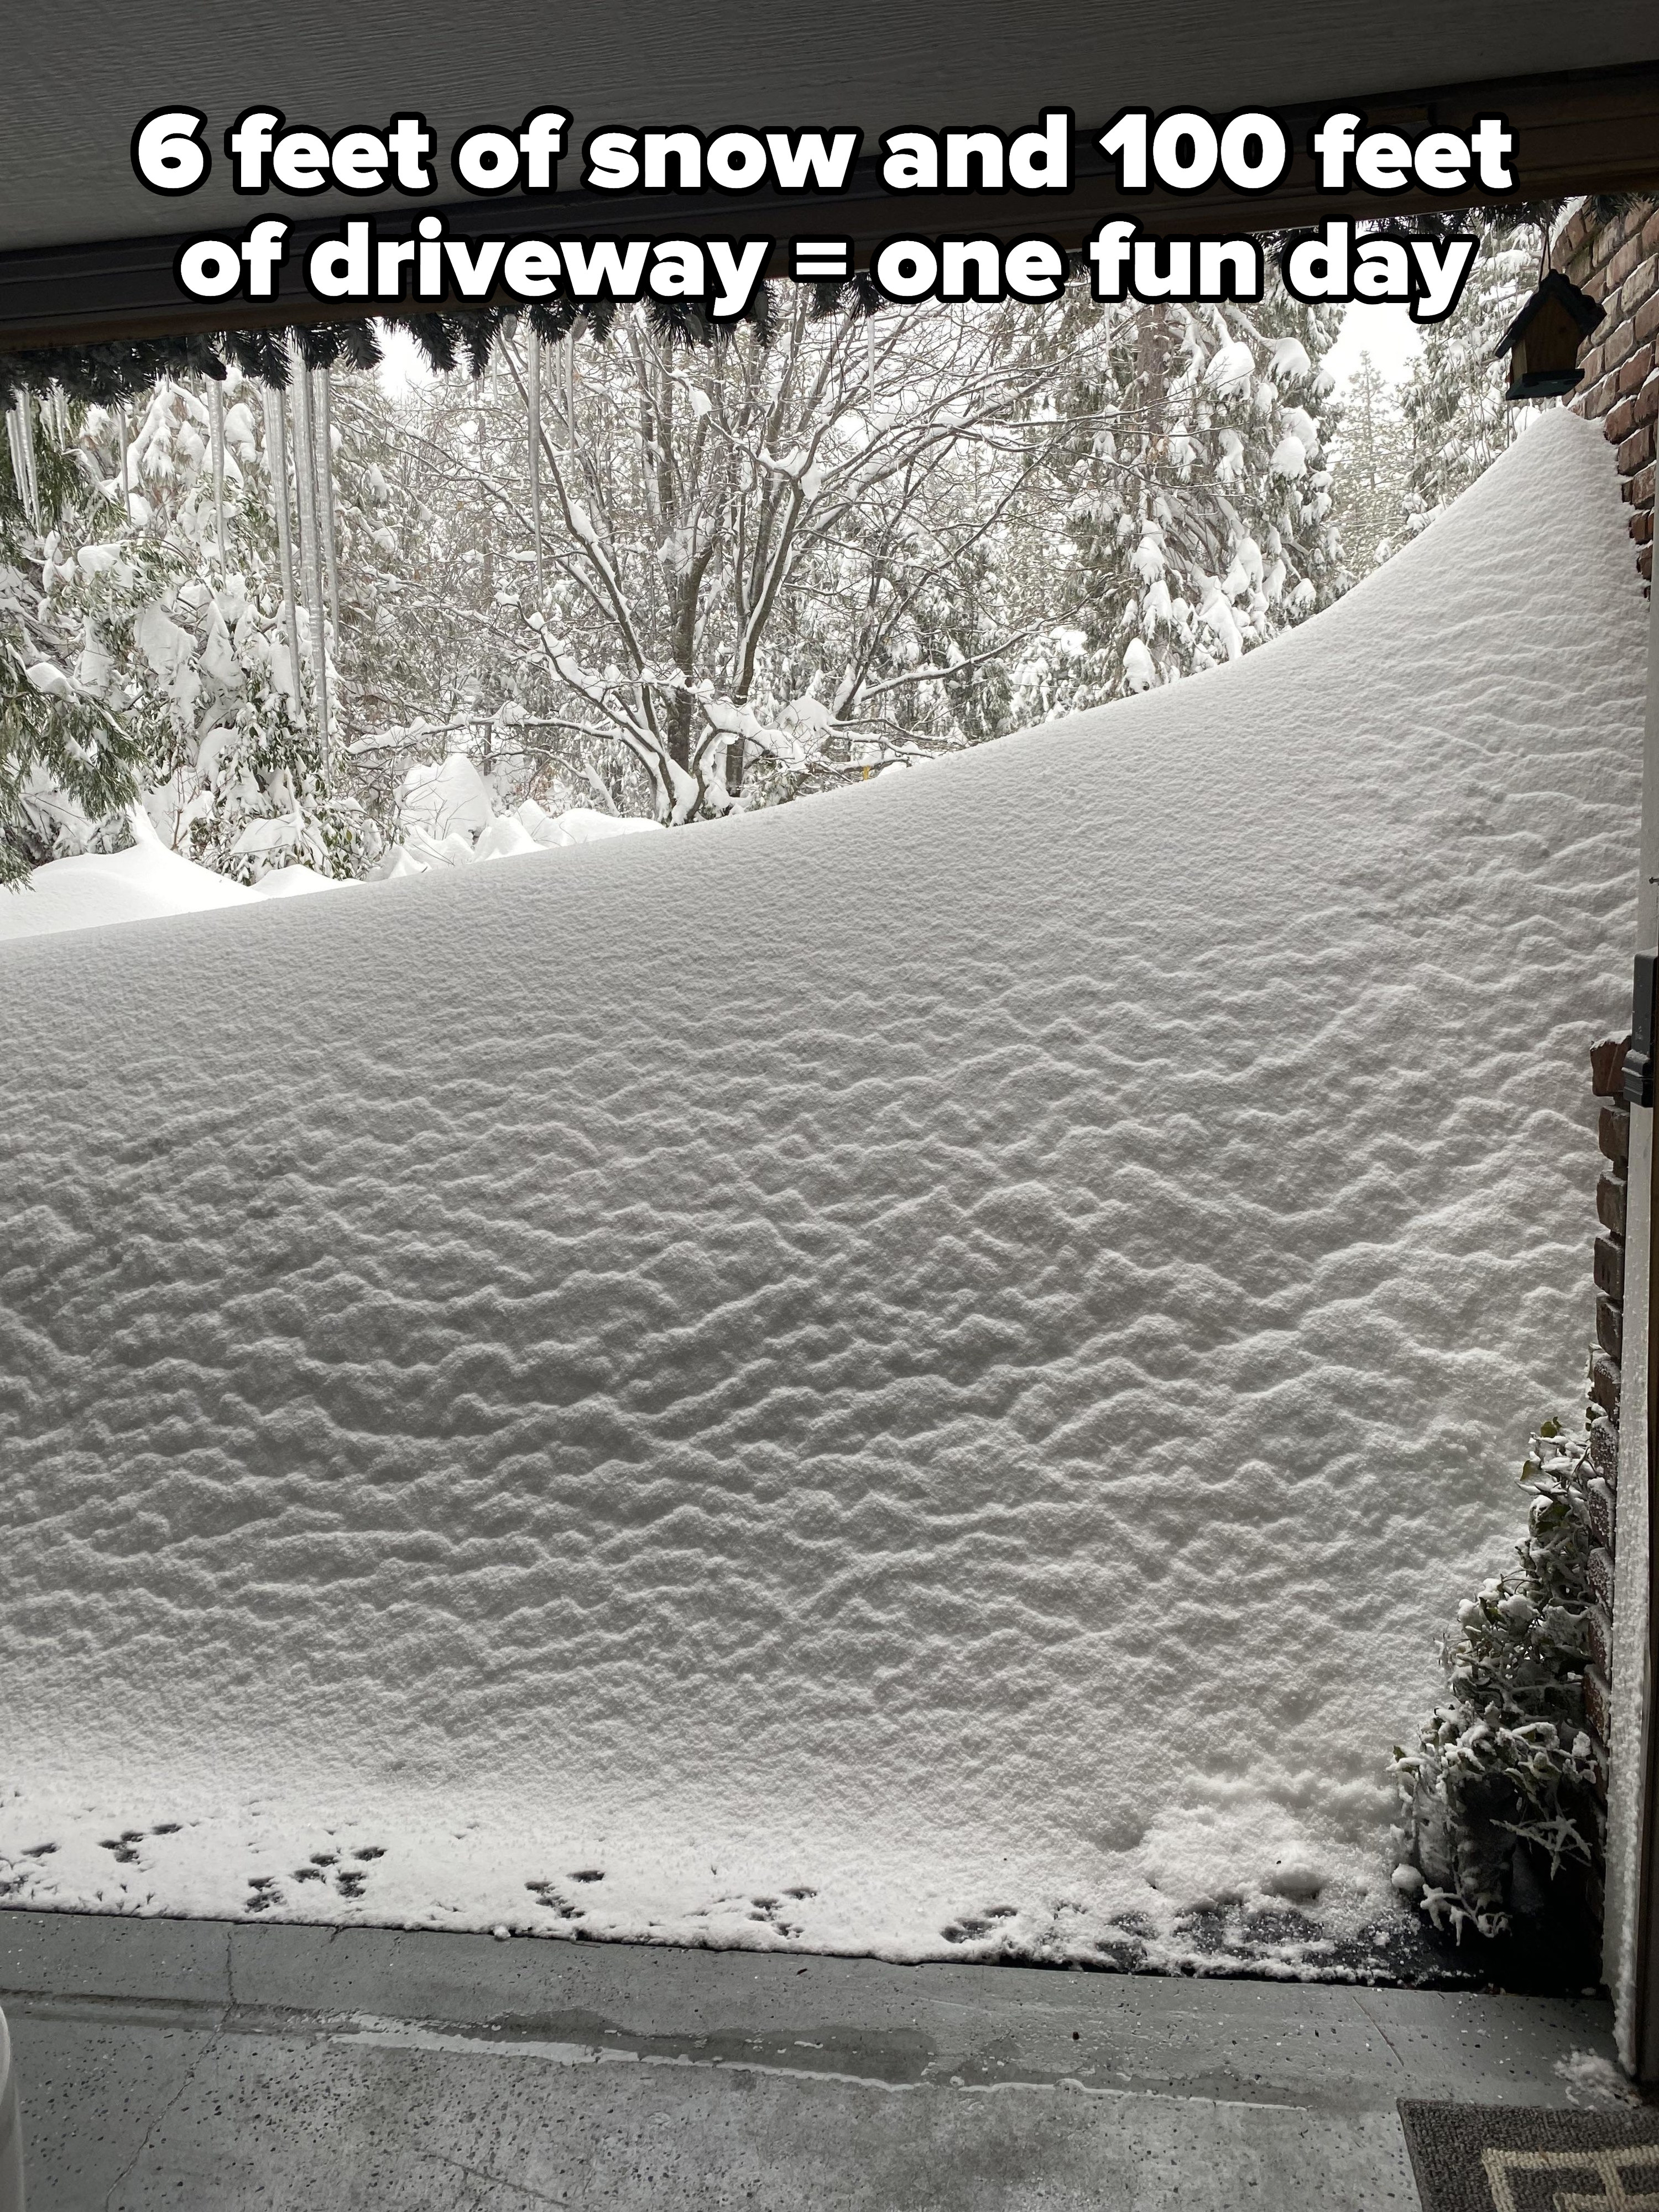 Snow blocking a garage doorway